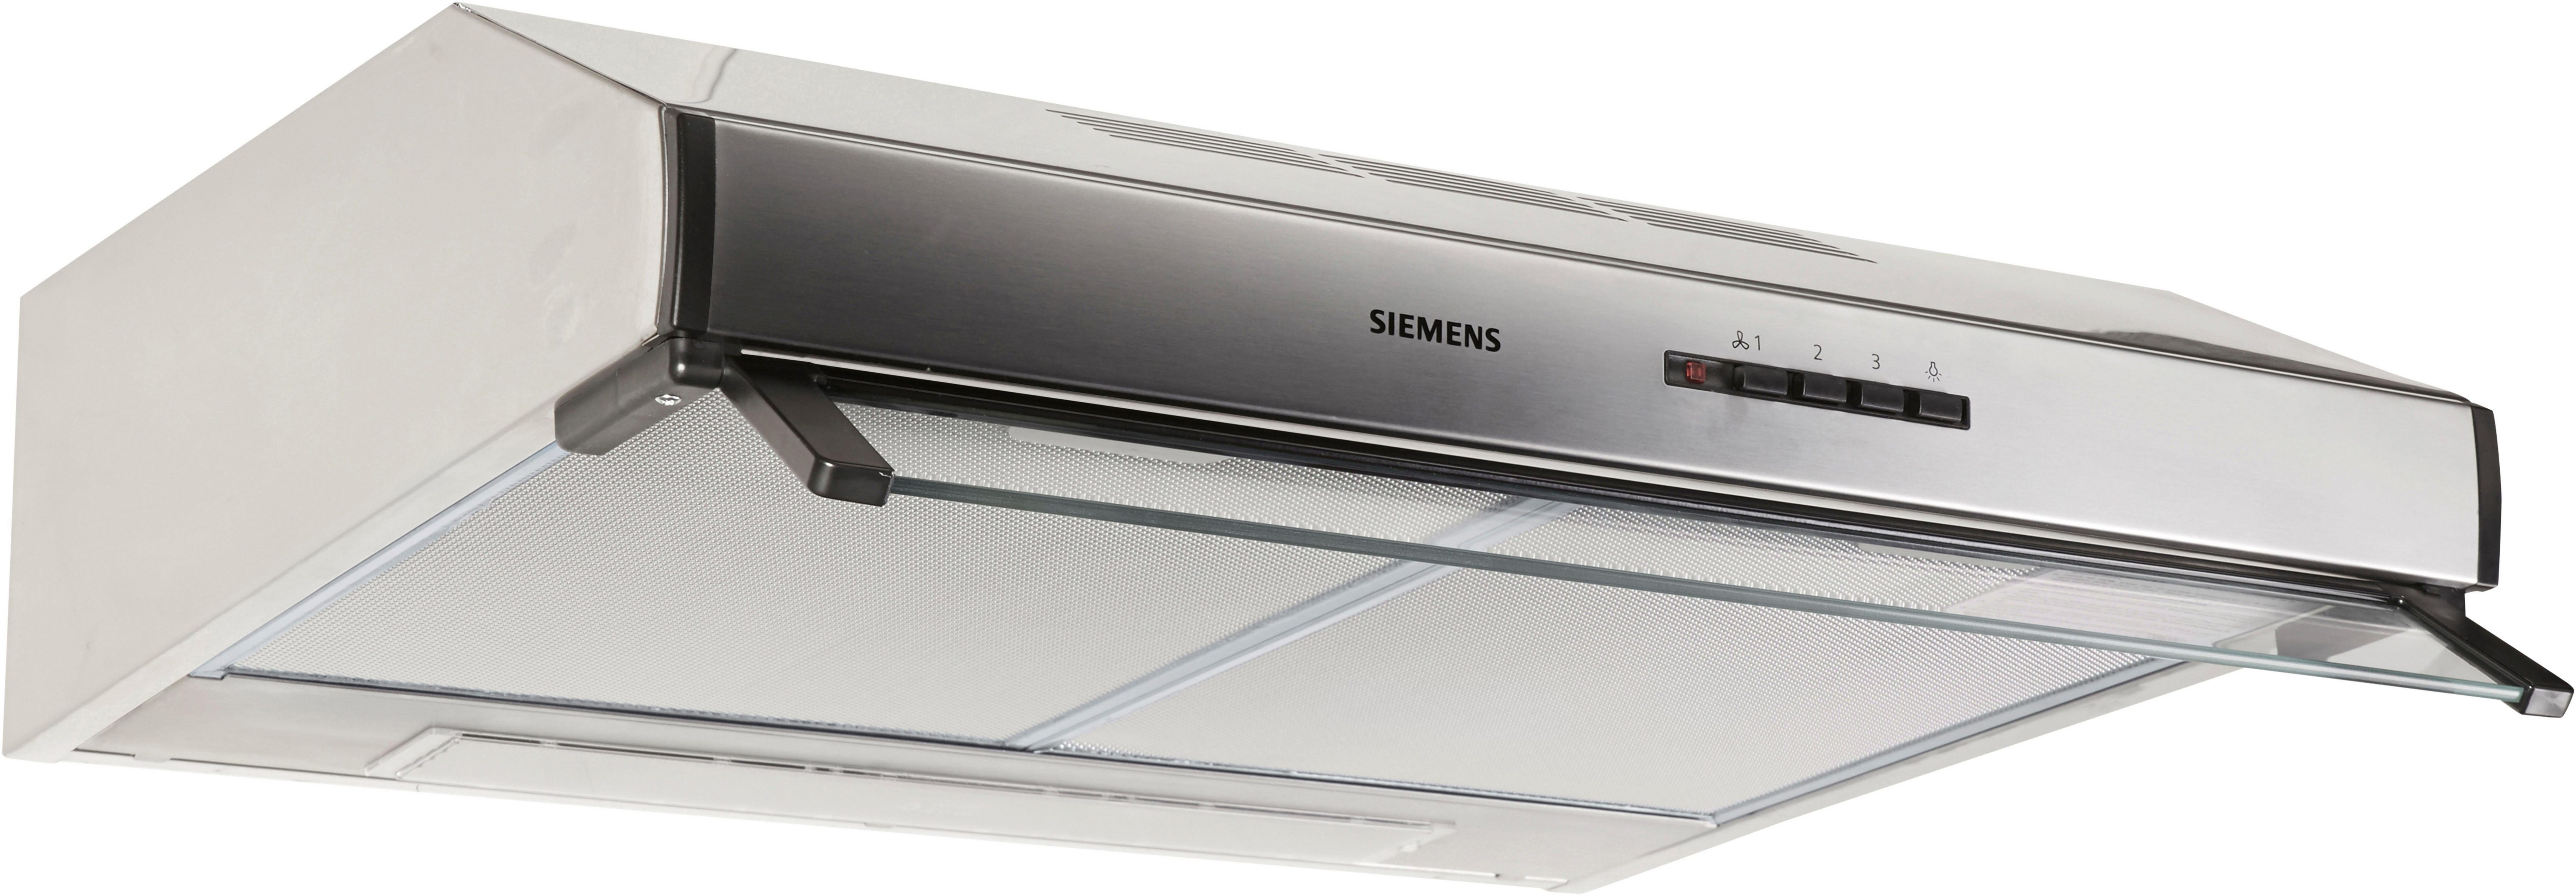 SIEMENS Unterbauhaube Serie iQ100 LU63LCC50, Die Lüfterleistung von 350  m³/h sorgt für frische Luft beim Kochen